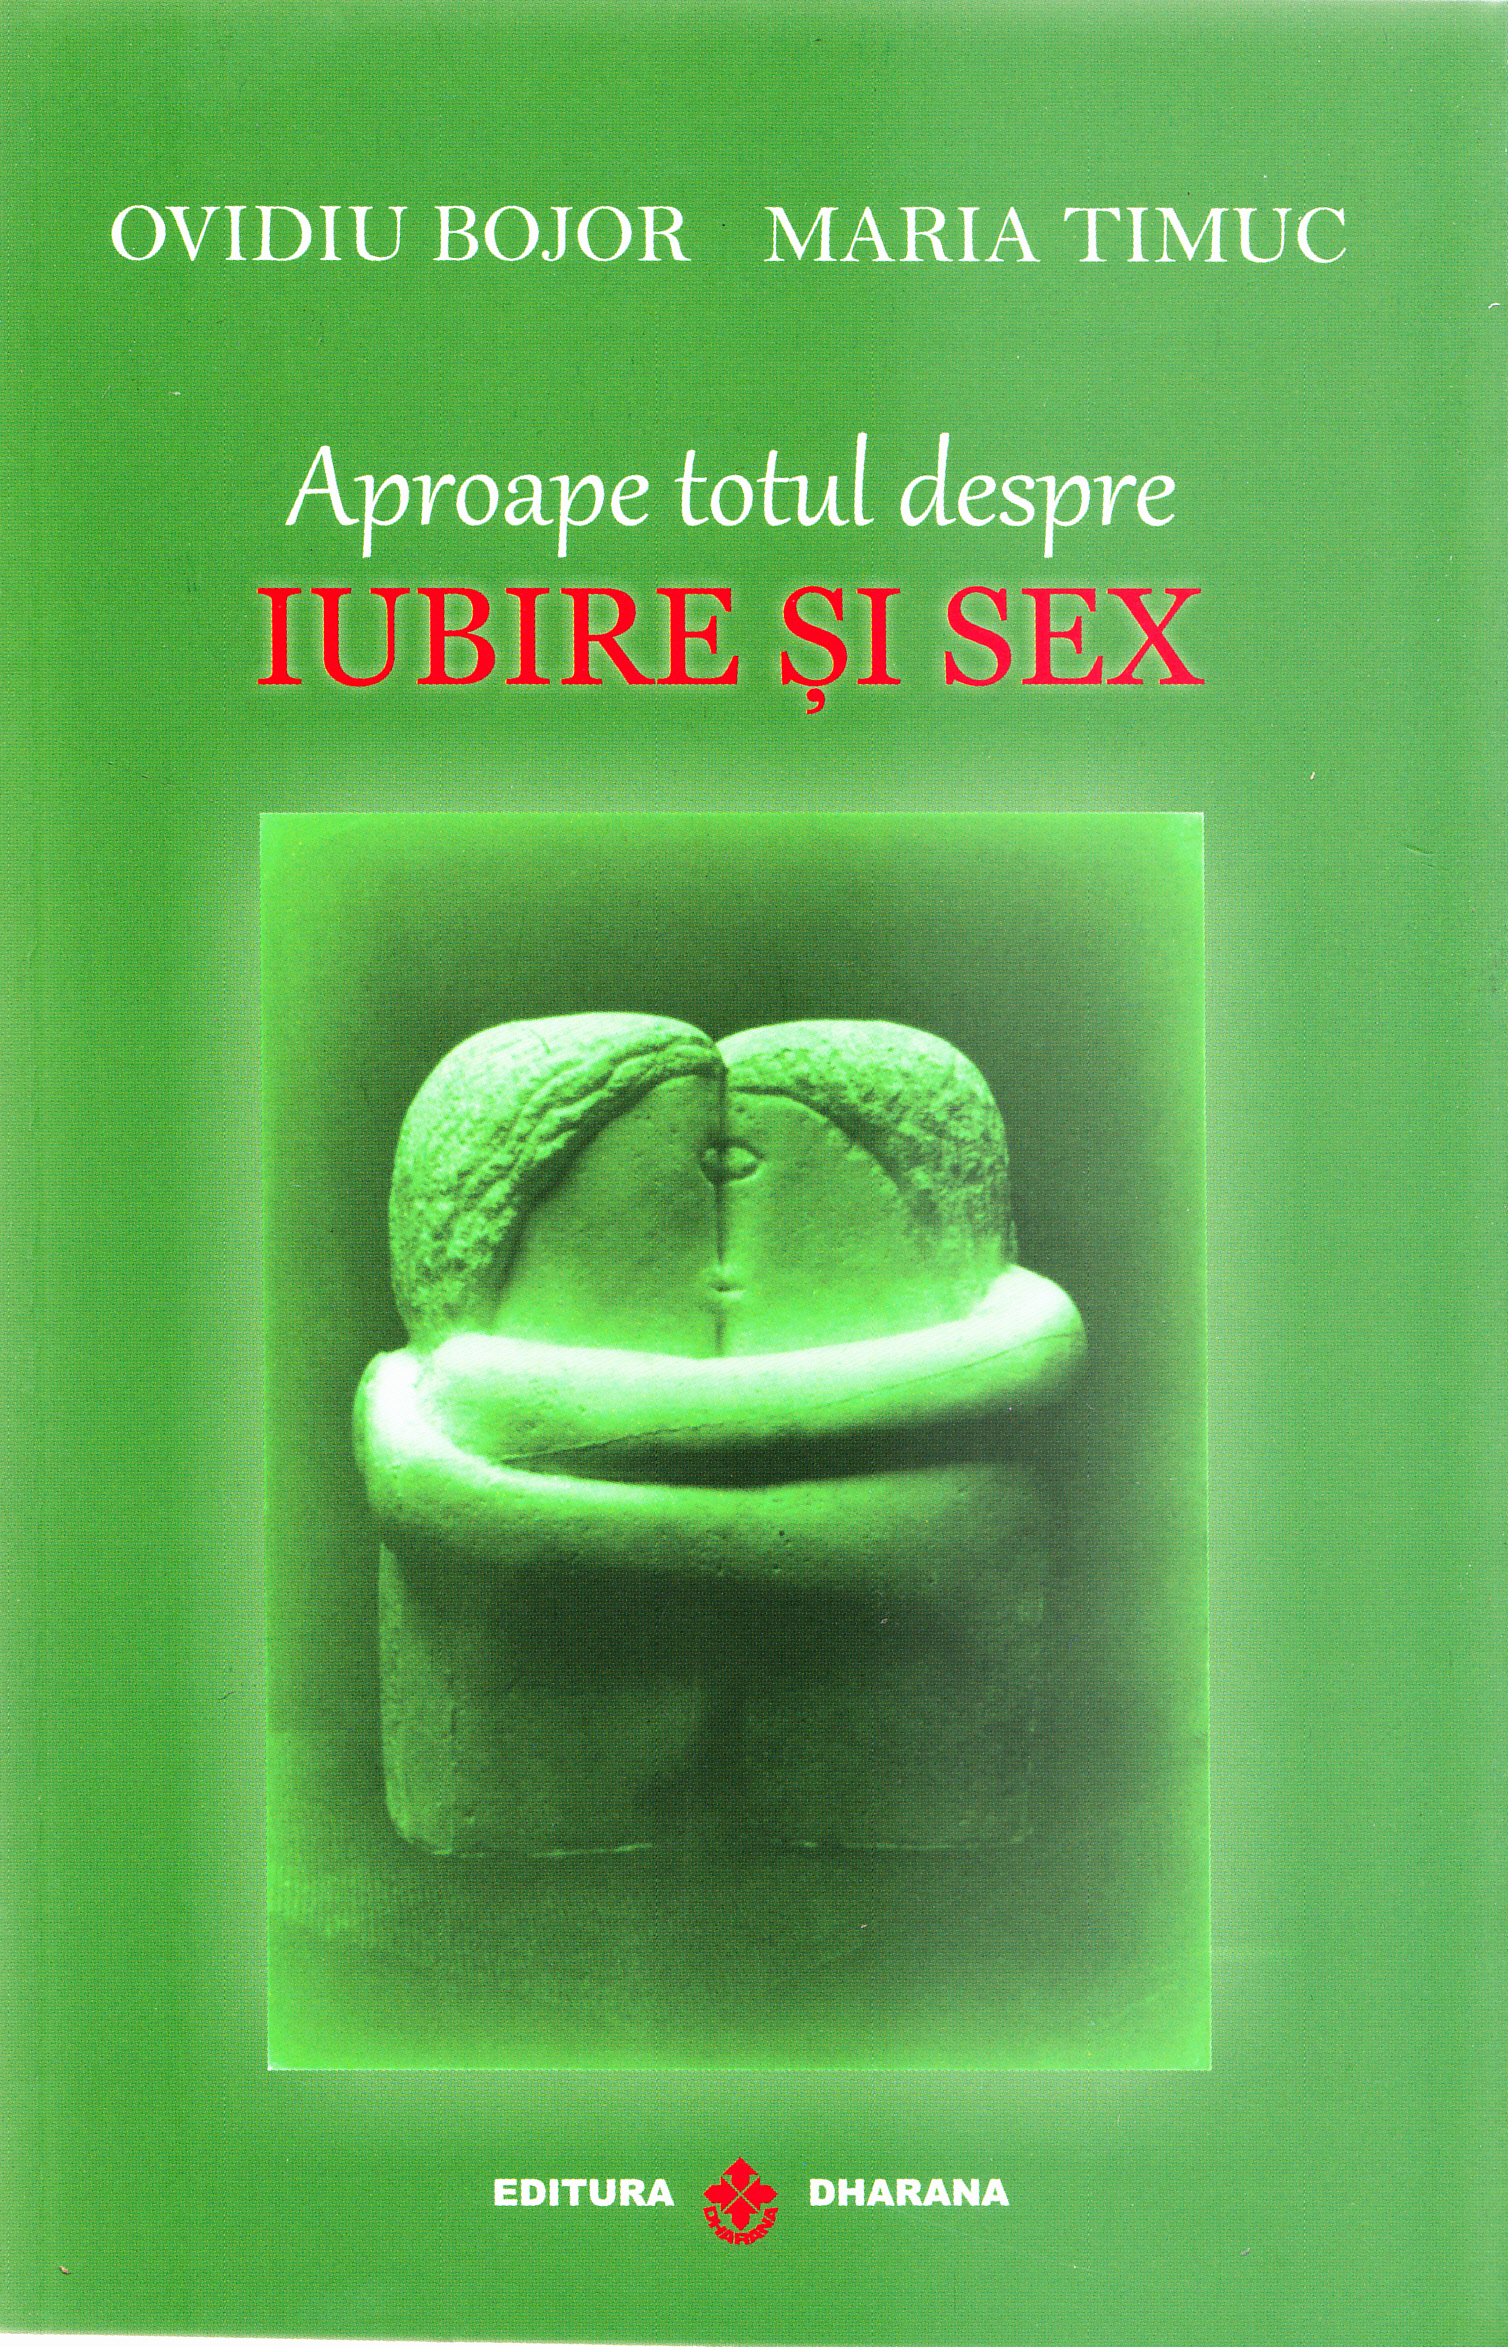 Aproape totul despre iubire si sex - Ovidiu Bojor, Maria Timuc